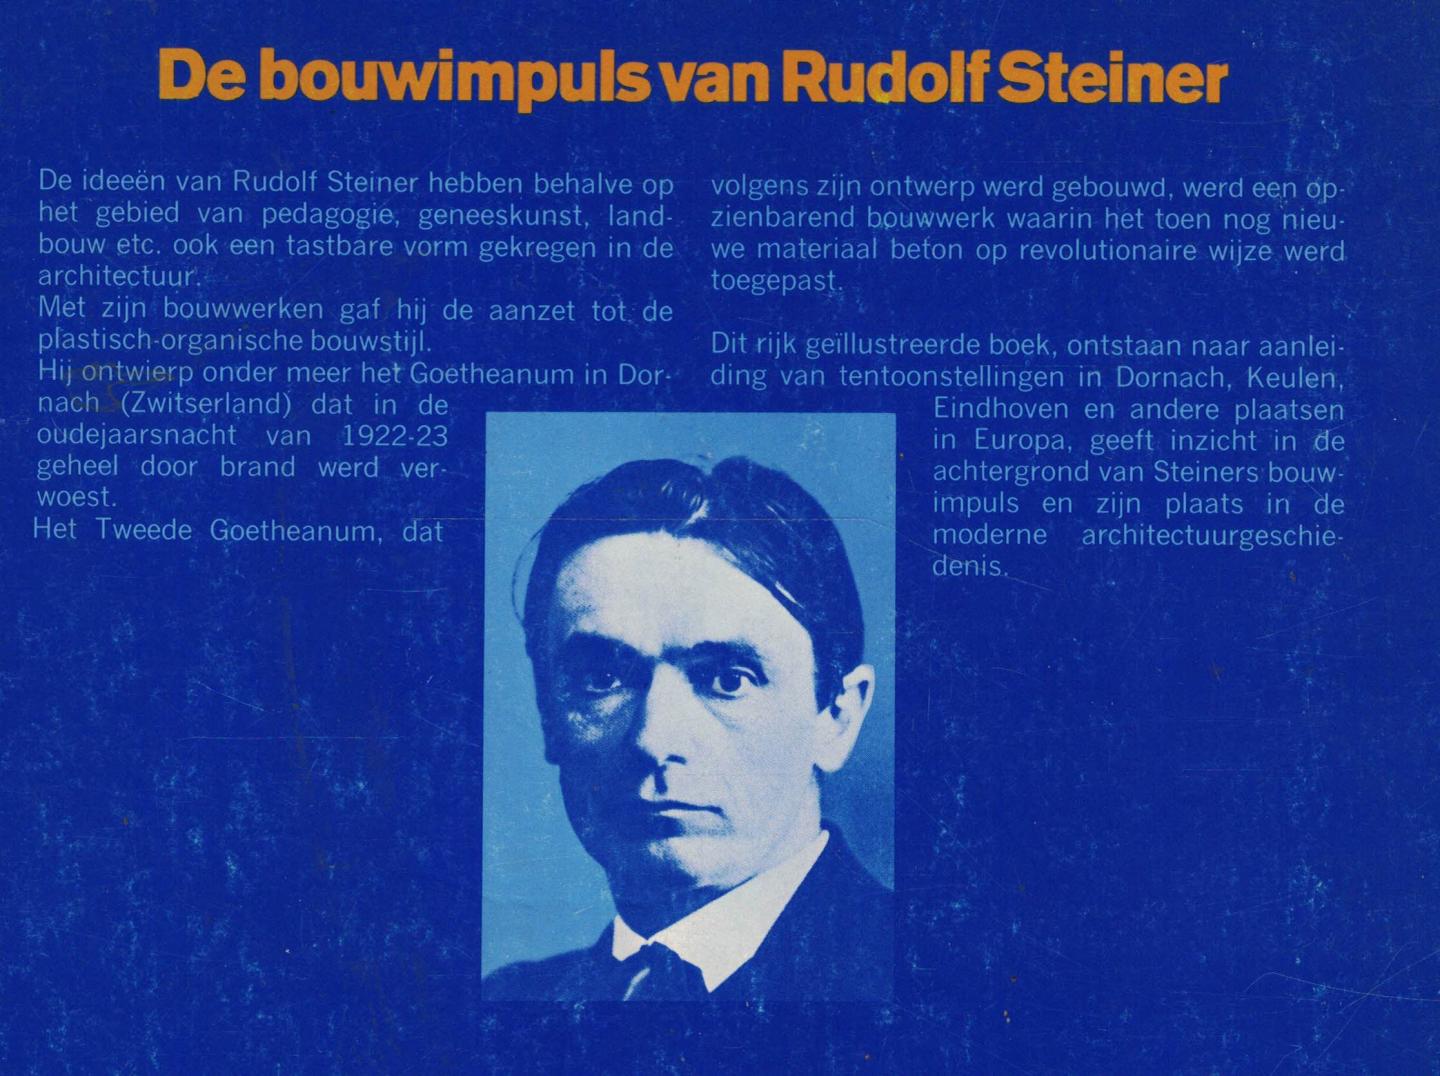 Biesantz, Hagen & Arne Klingborg - Het Goetheanum - De bouwimpuls van Rudolf Steiner